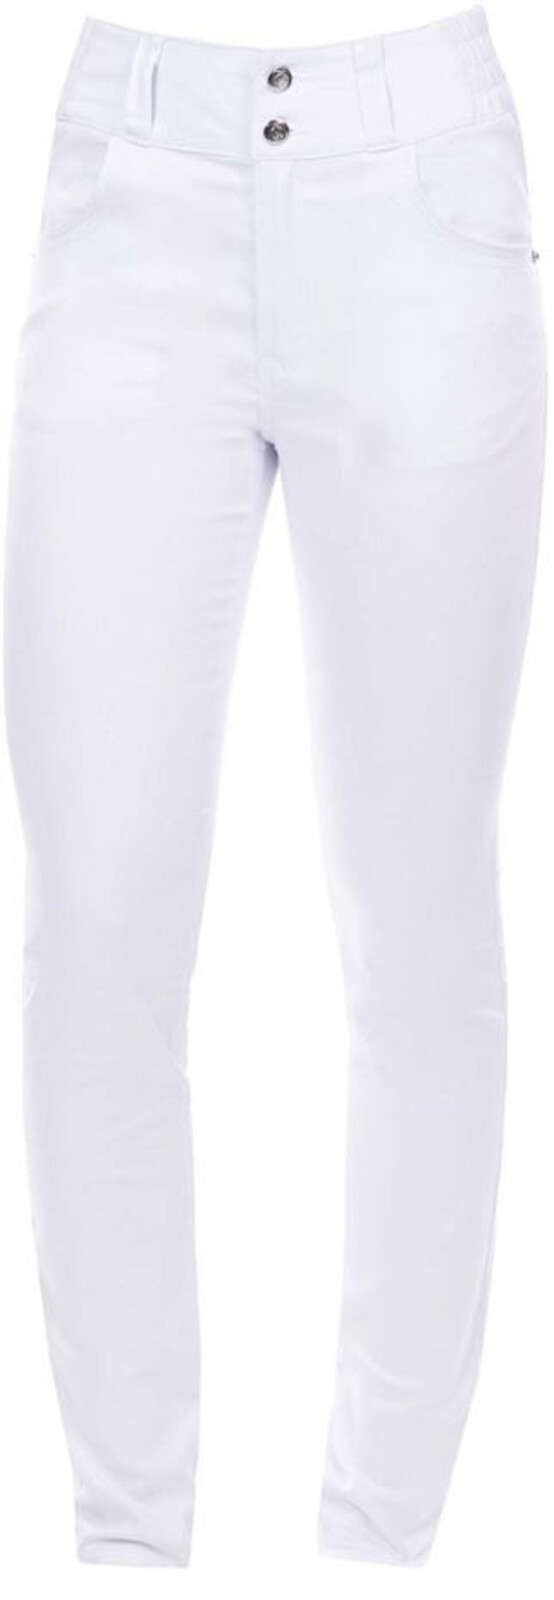 Dámske elastické nohavice Ardon Jasvena - veľkosť: 36, farba: biela